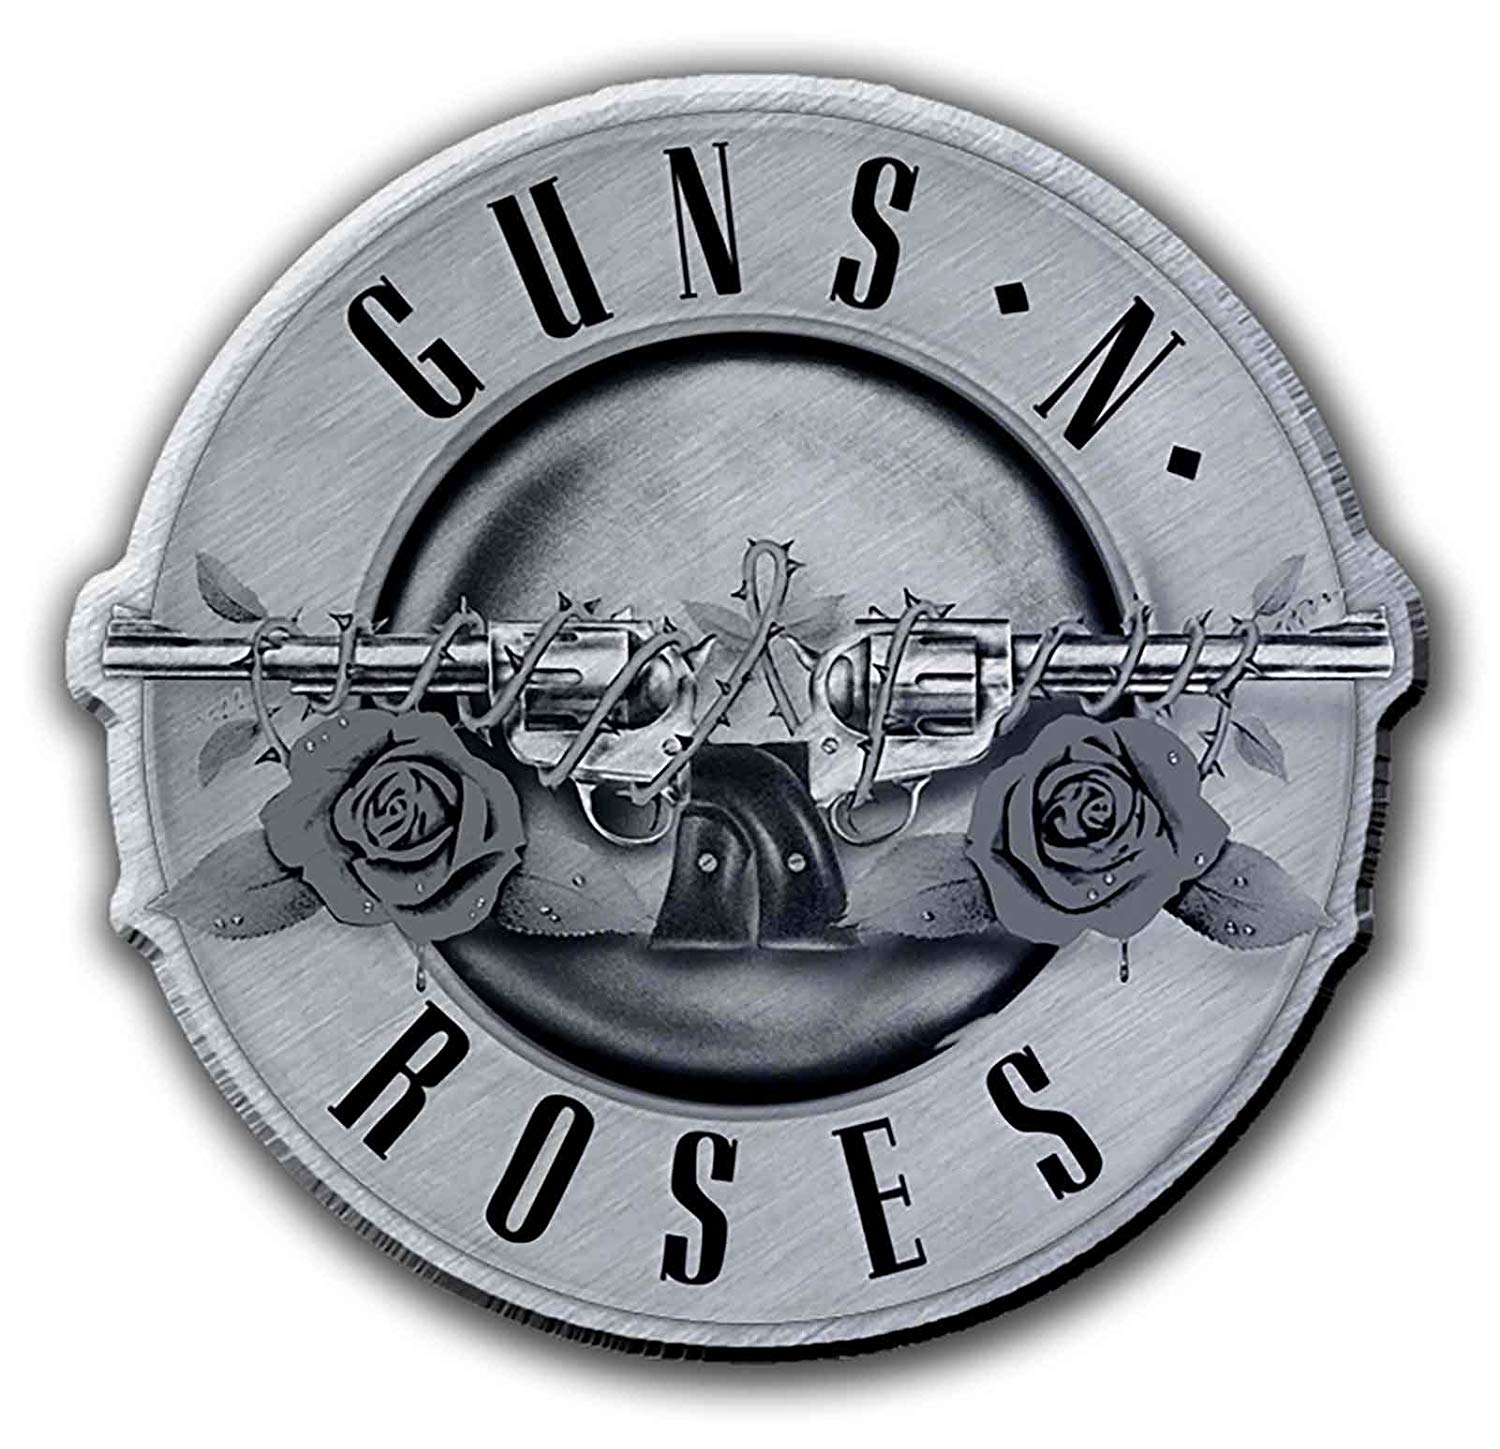 Guns and Roses Band Logo - Amazon.com: Guns N Roses Pin Badge Classic Bullet Band Logo Official ...